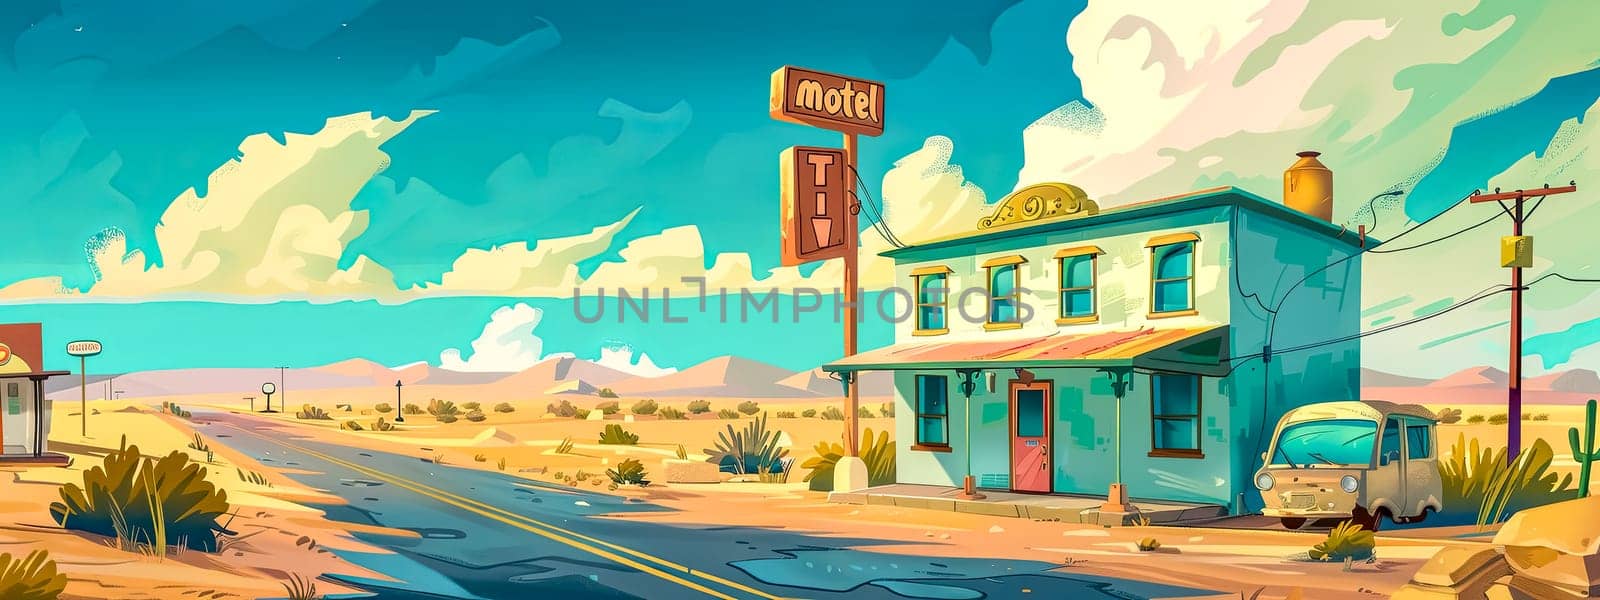 Illustration of a nostalgic motel in a barren desert landscape with a vintage car